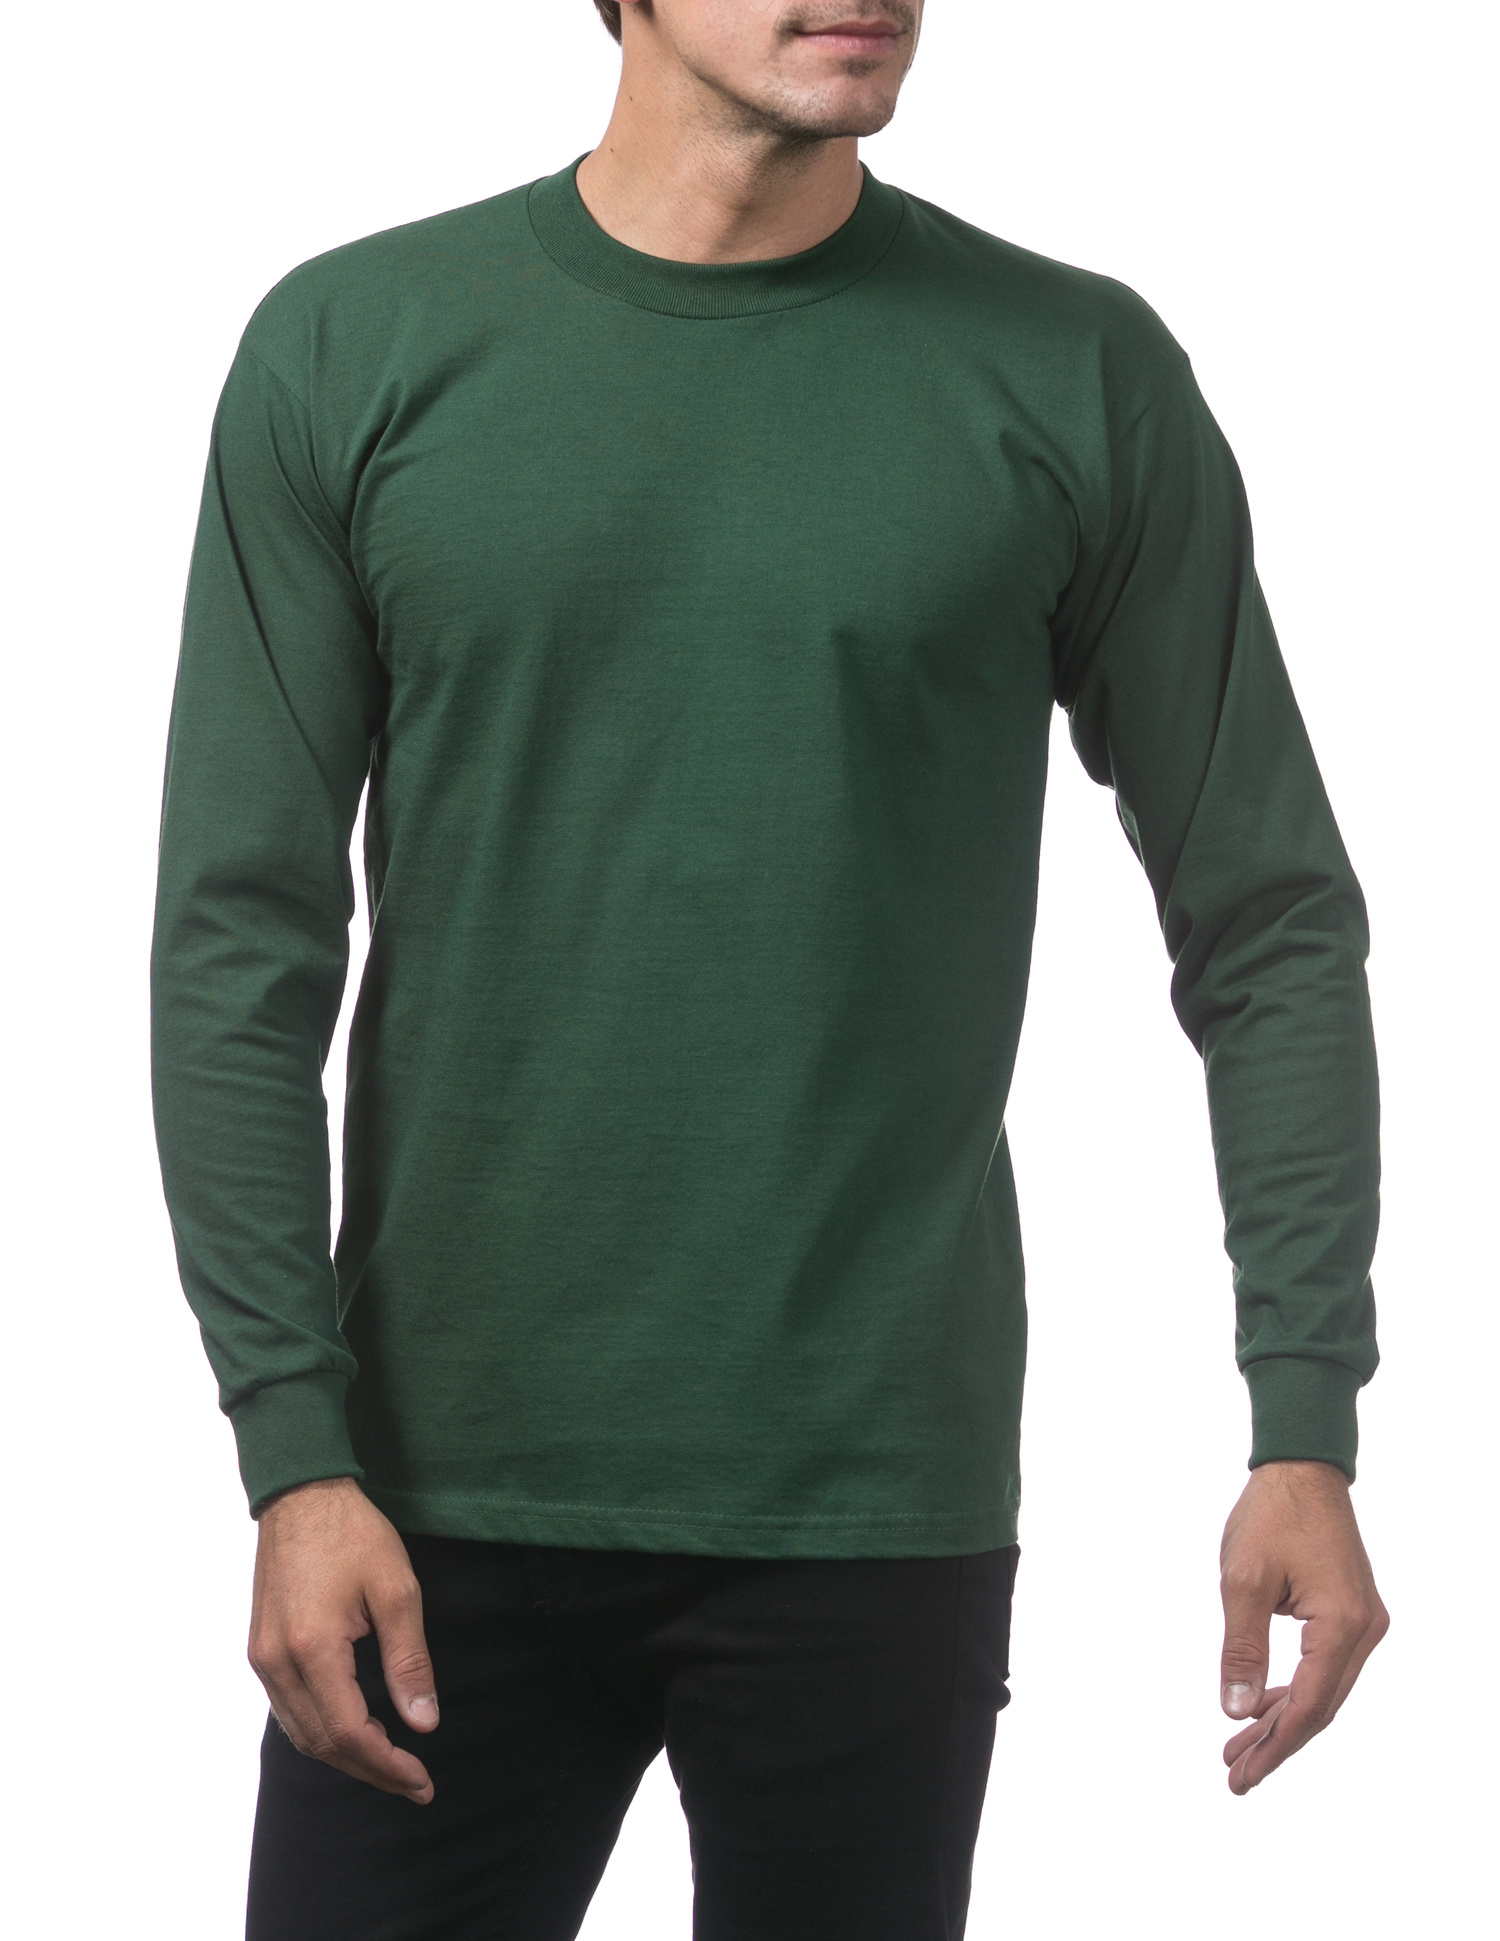 Crew - Cotton Neck Shirts FOREST 114 Long GREEN Sleeve T-Shirt Heavyweight